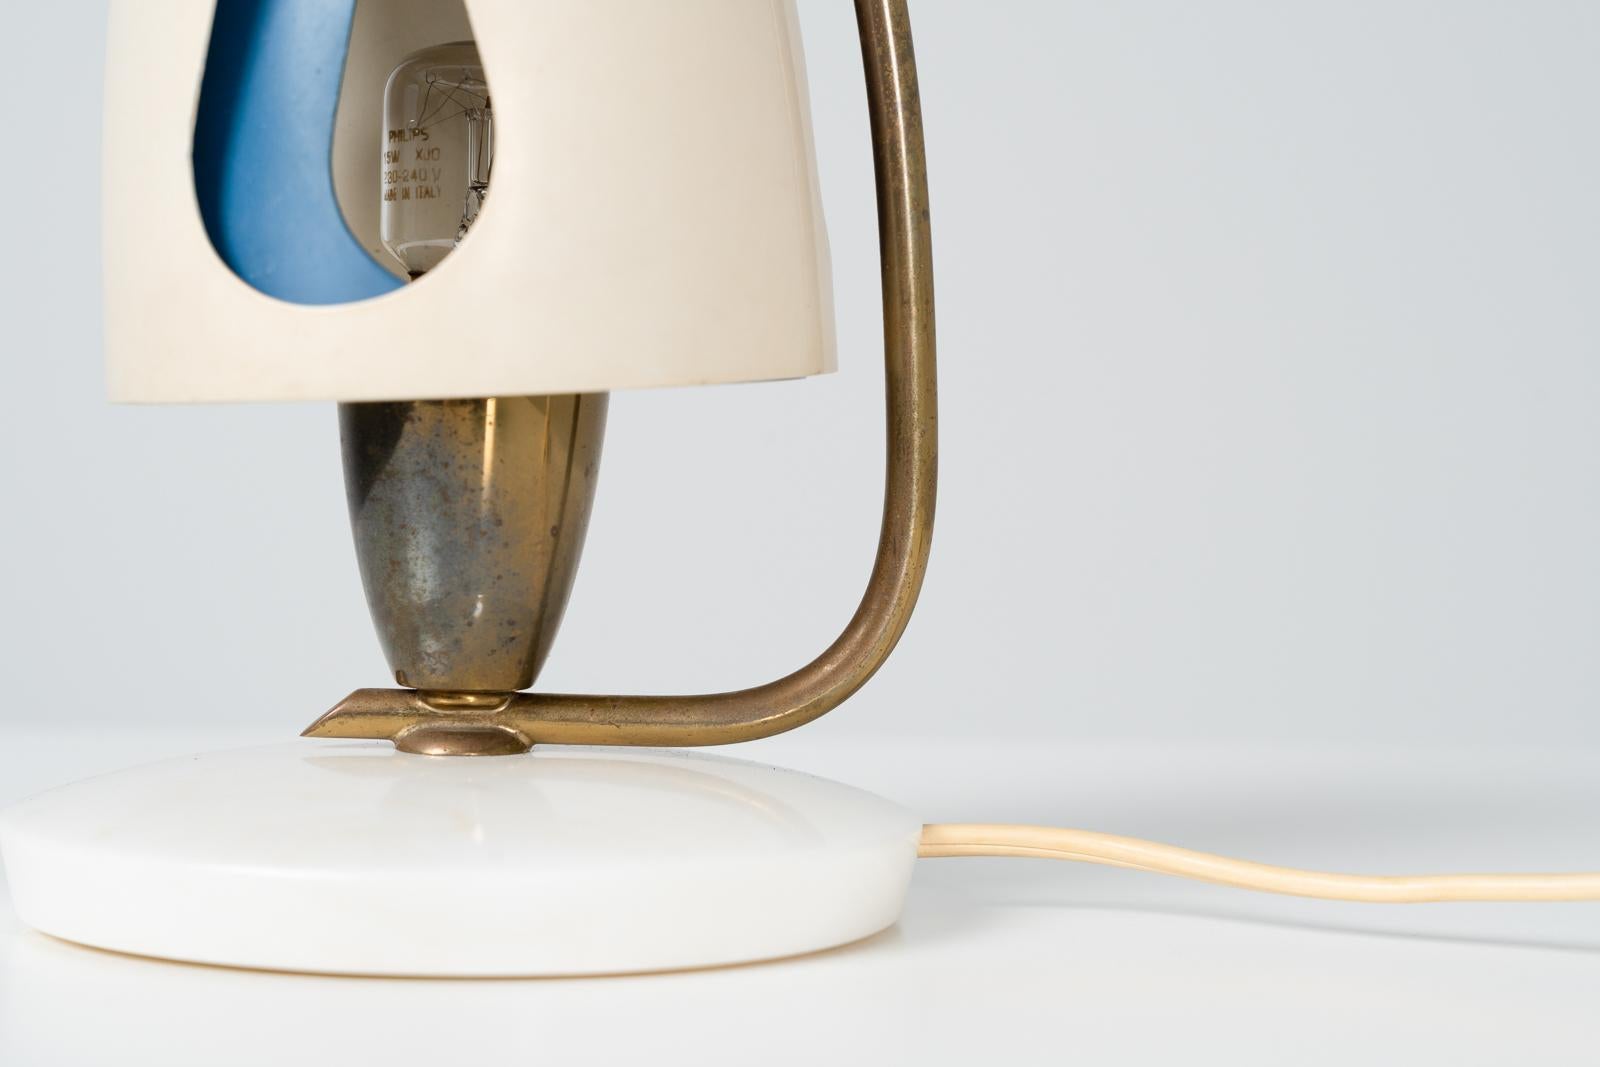 Très belle lampe de table par Angelo Lelii et fabriquée par Arredoluce en 1952. La lampe elle-même est faite d'aluminium, de laiton et a un pied en marbre. L'abat-jour peut être ajusté pour laisser passer la lumière par les trous, ce qui est une